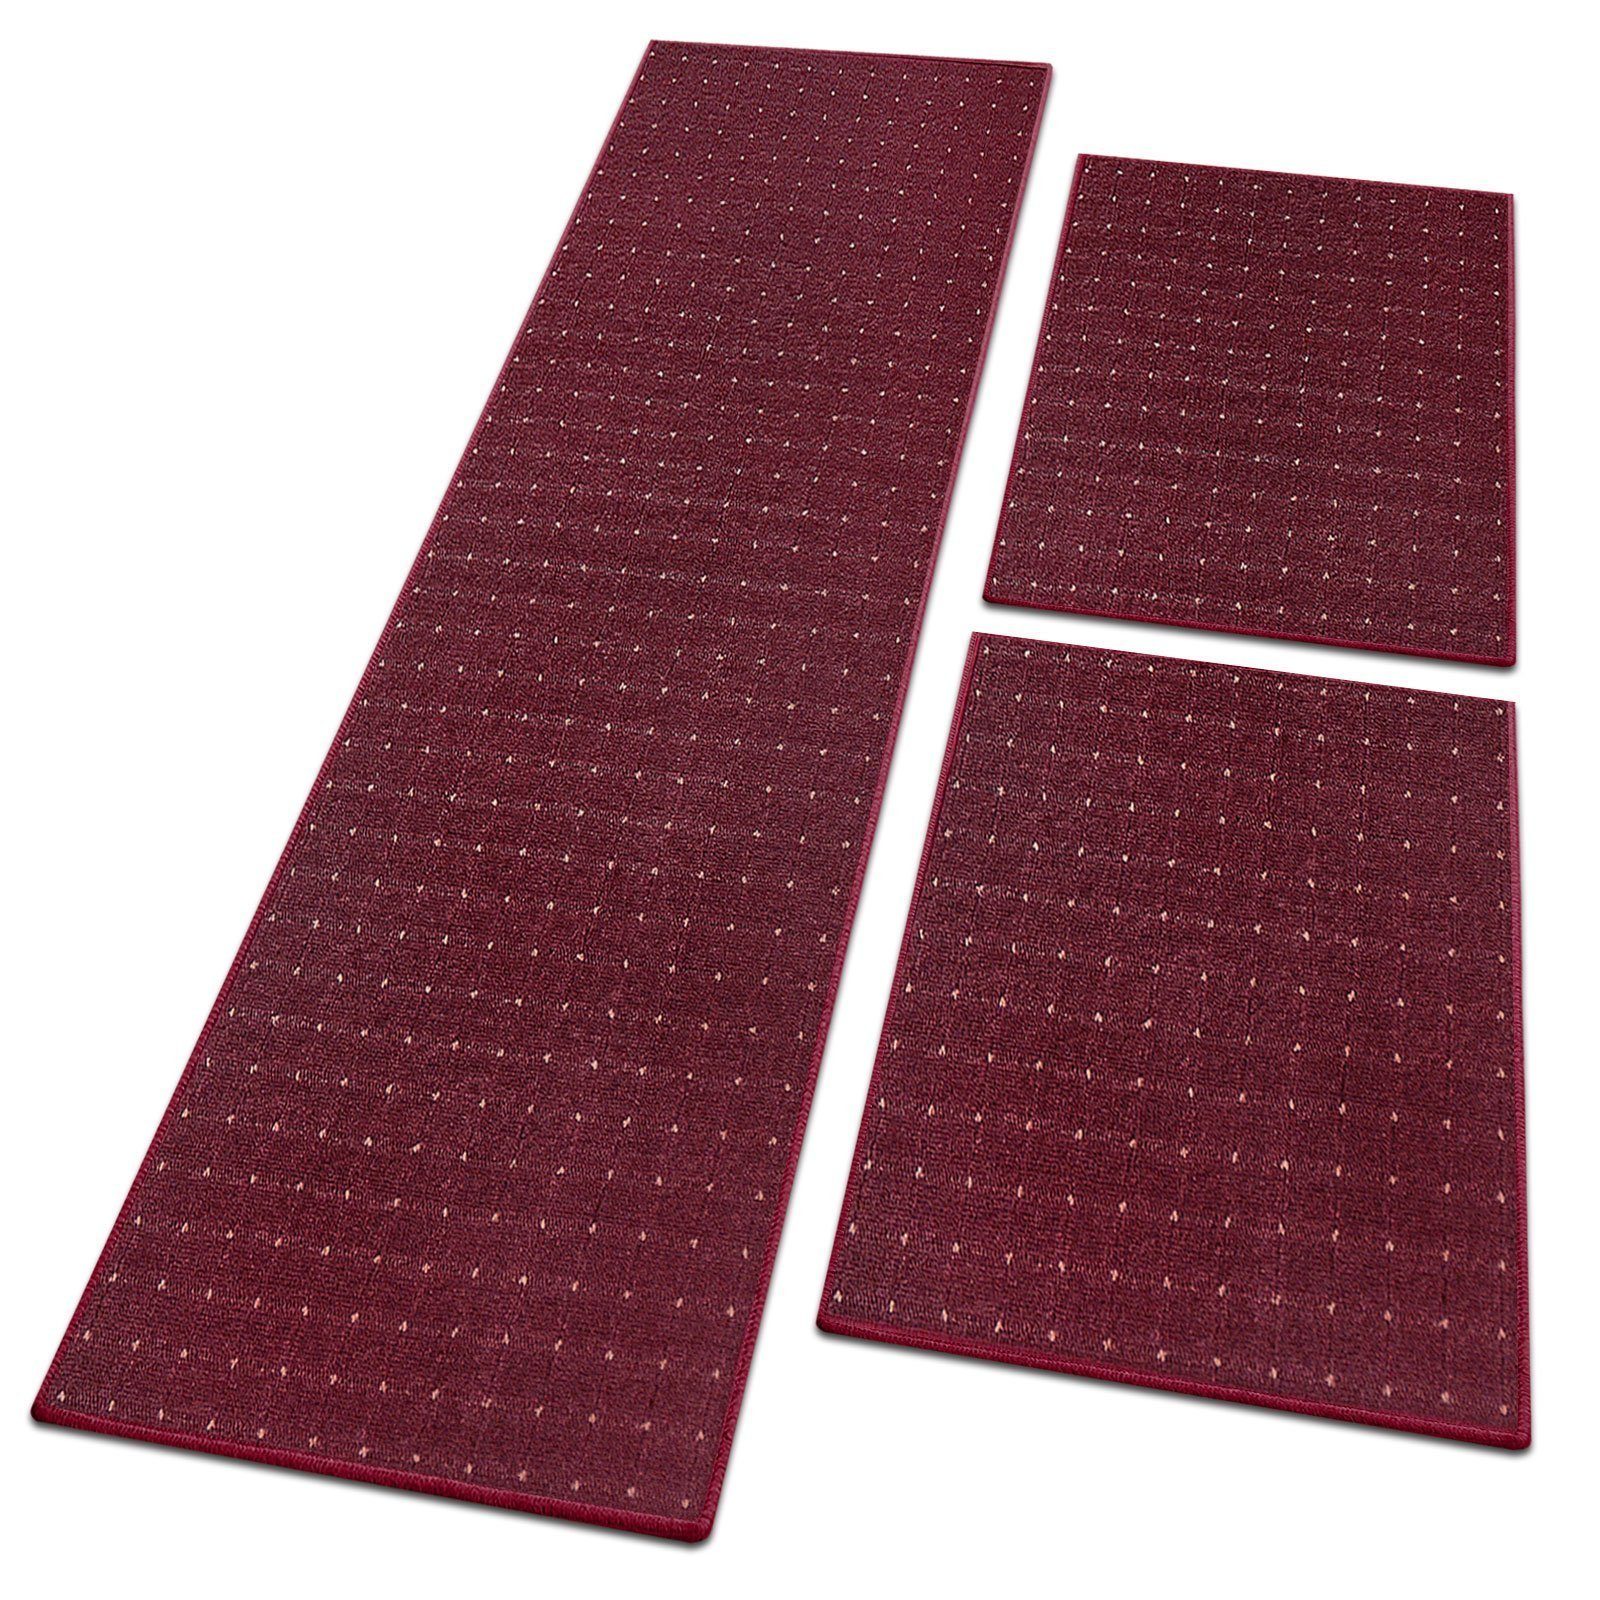 Bettumrandung Rapido, 4 Farben & 3 Größen, Bettvorleger Floordirekt, Höhe 5 mm, (3-tlg) lila